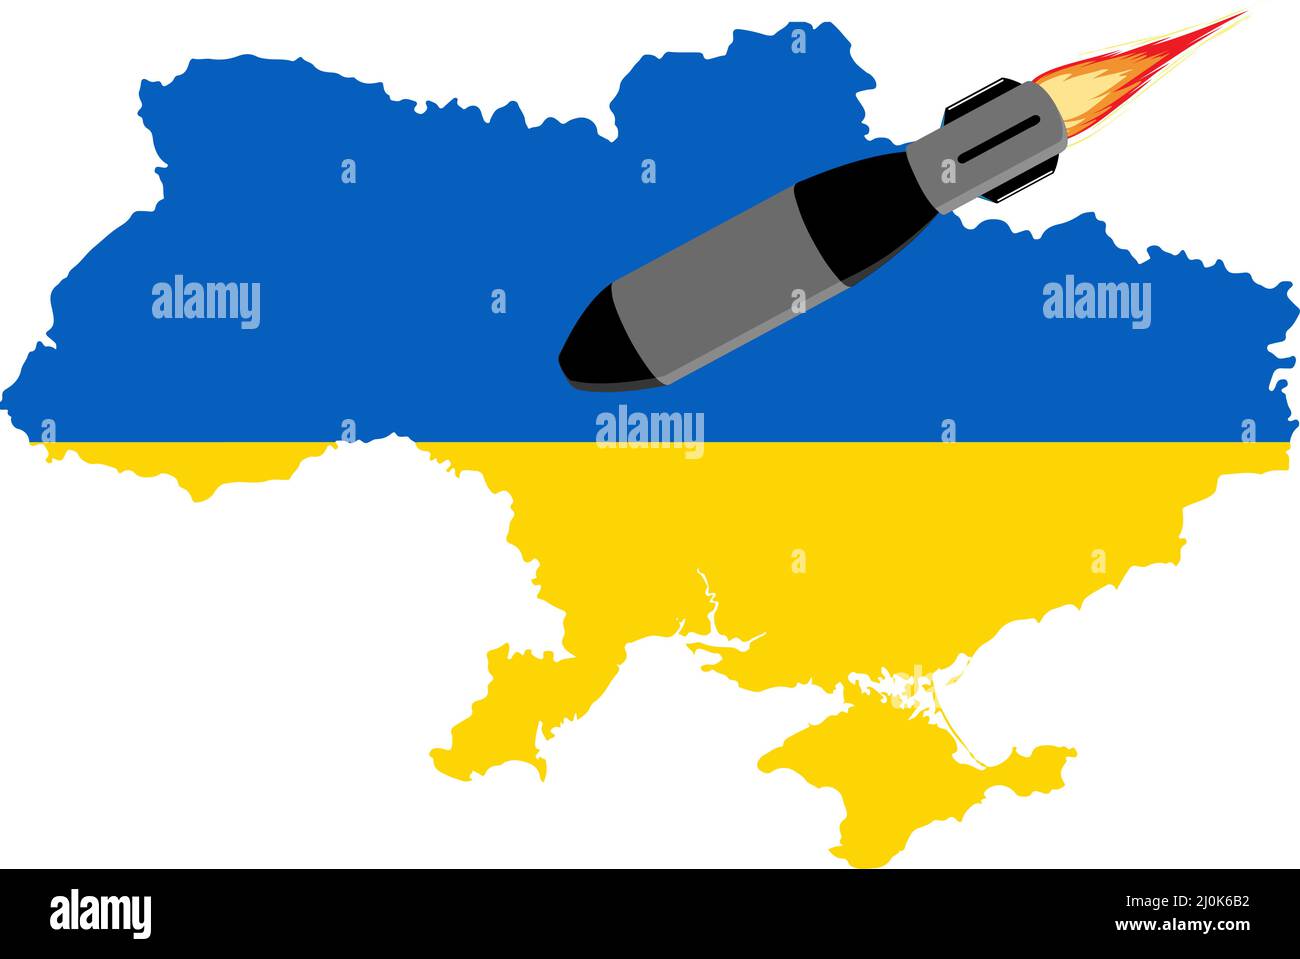 Des missiles russes frappent des villes ukrainiennes. Arrêter l'invasion russe, arrêter la guerre Illustration de Vecteur